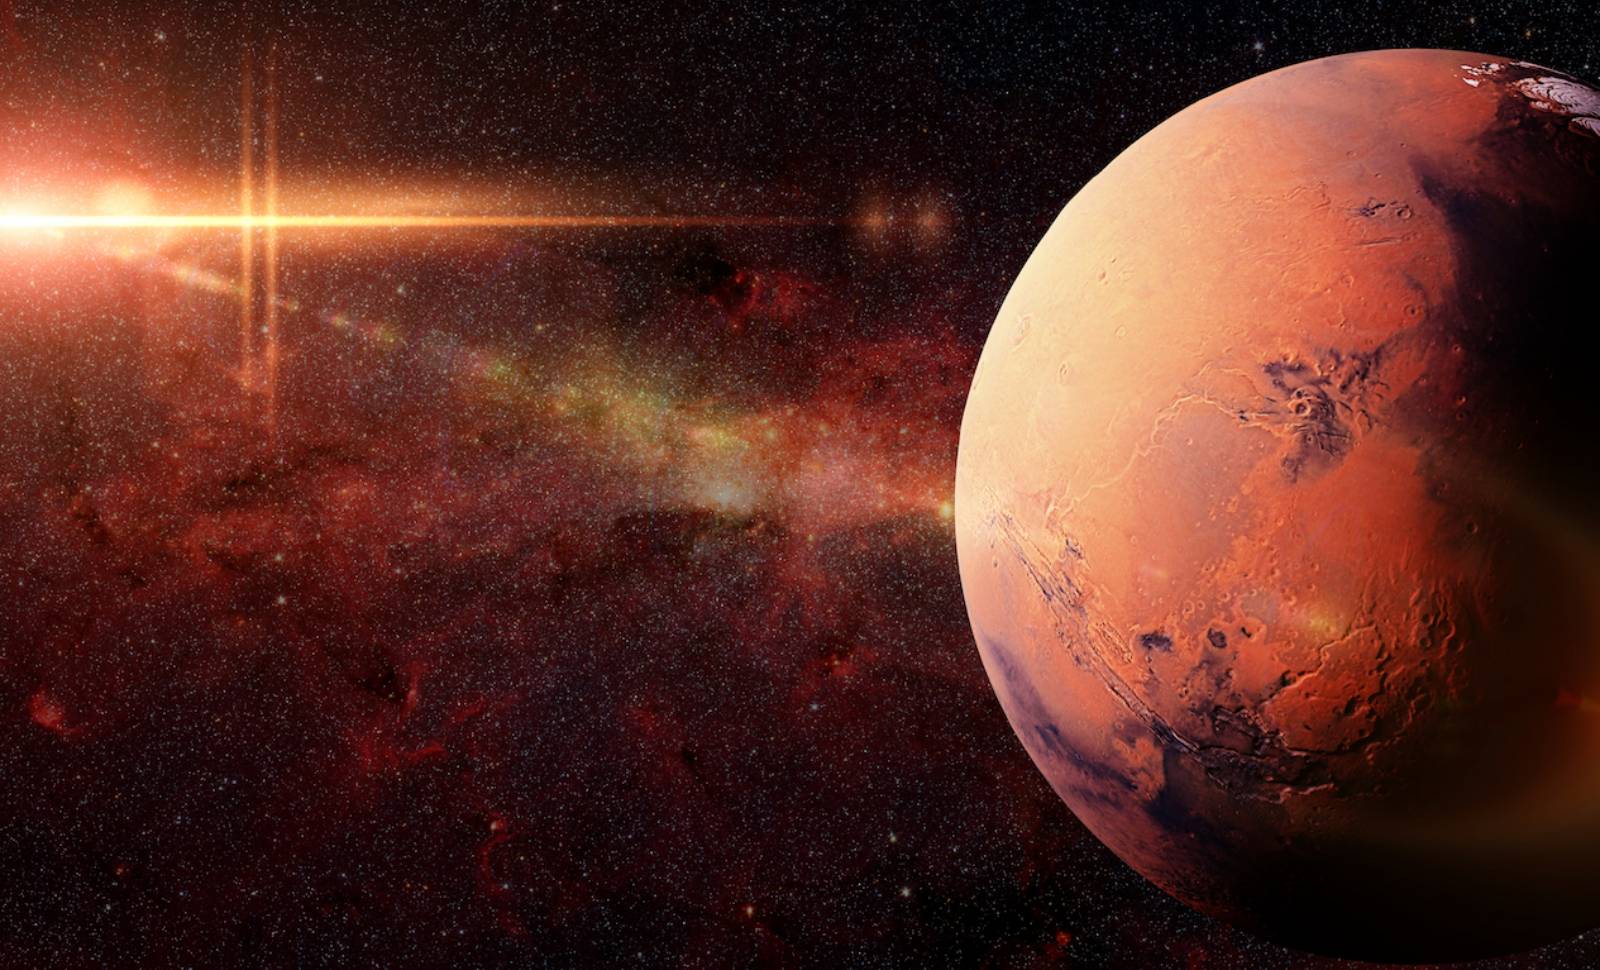 MADRINA. INCREÍBLE imagen de Marte que CONMOCIONÓ a Internet